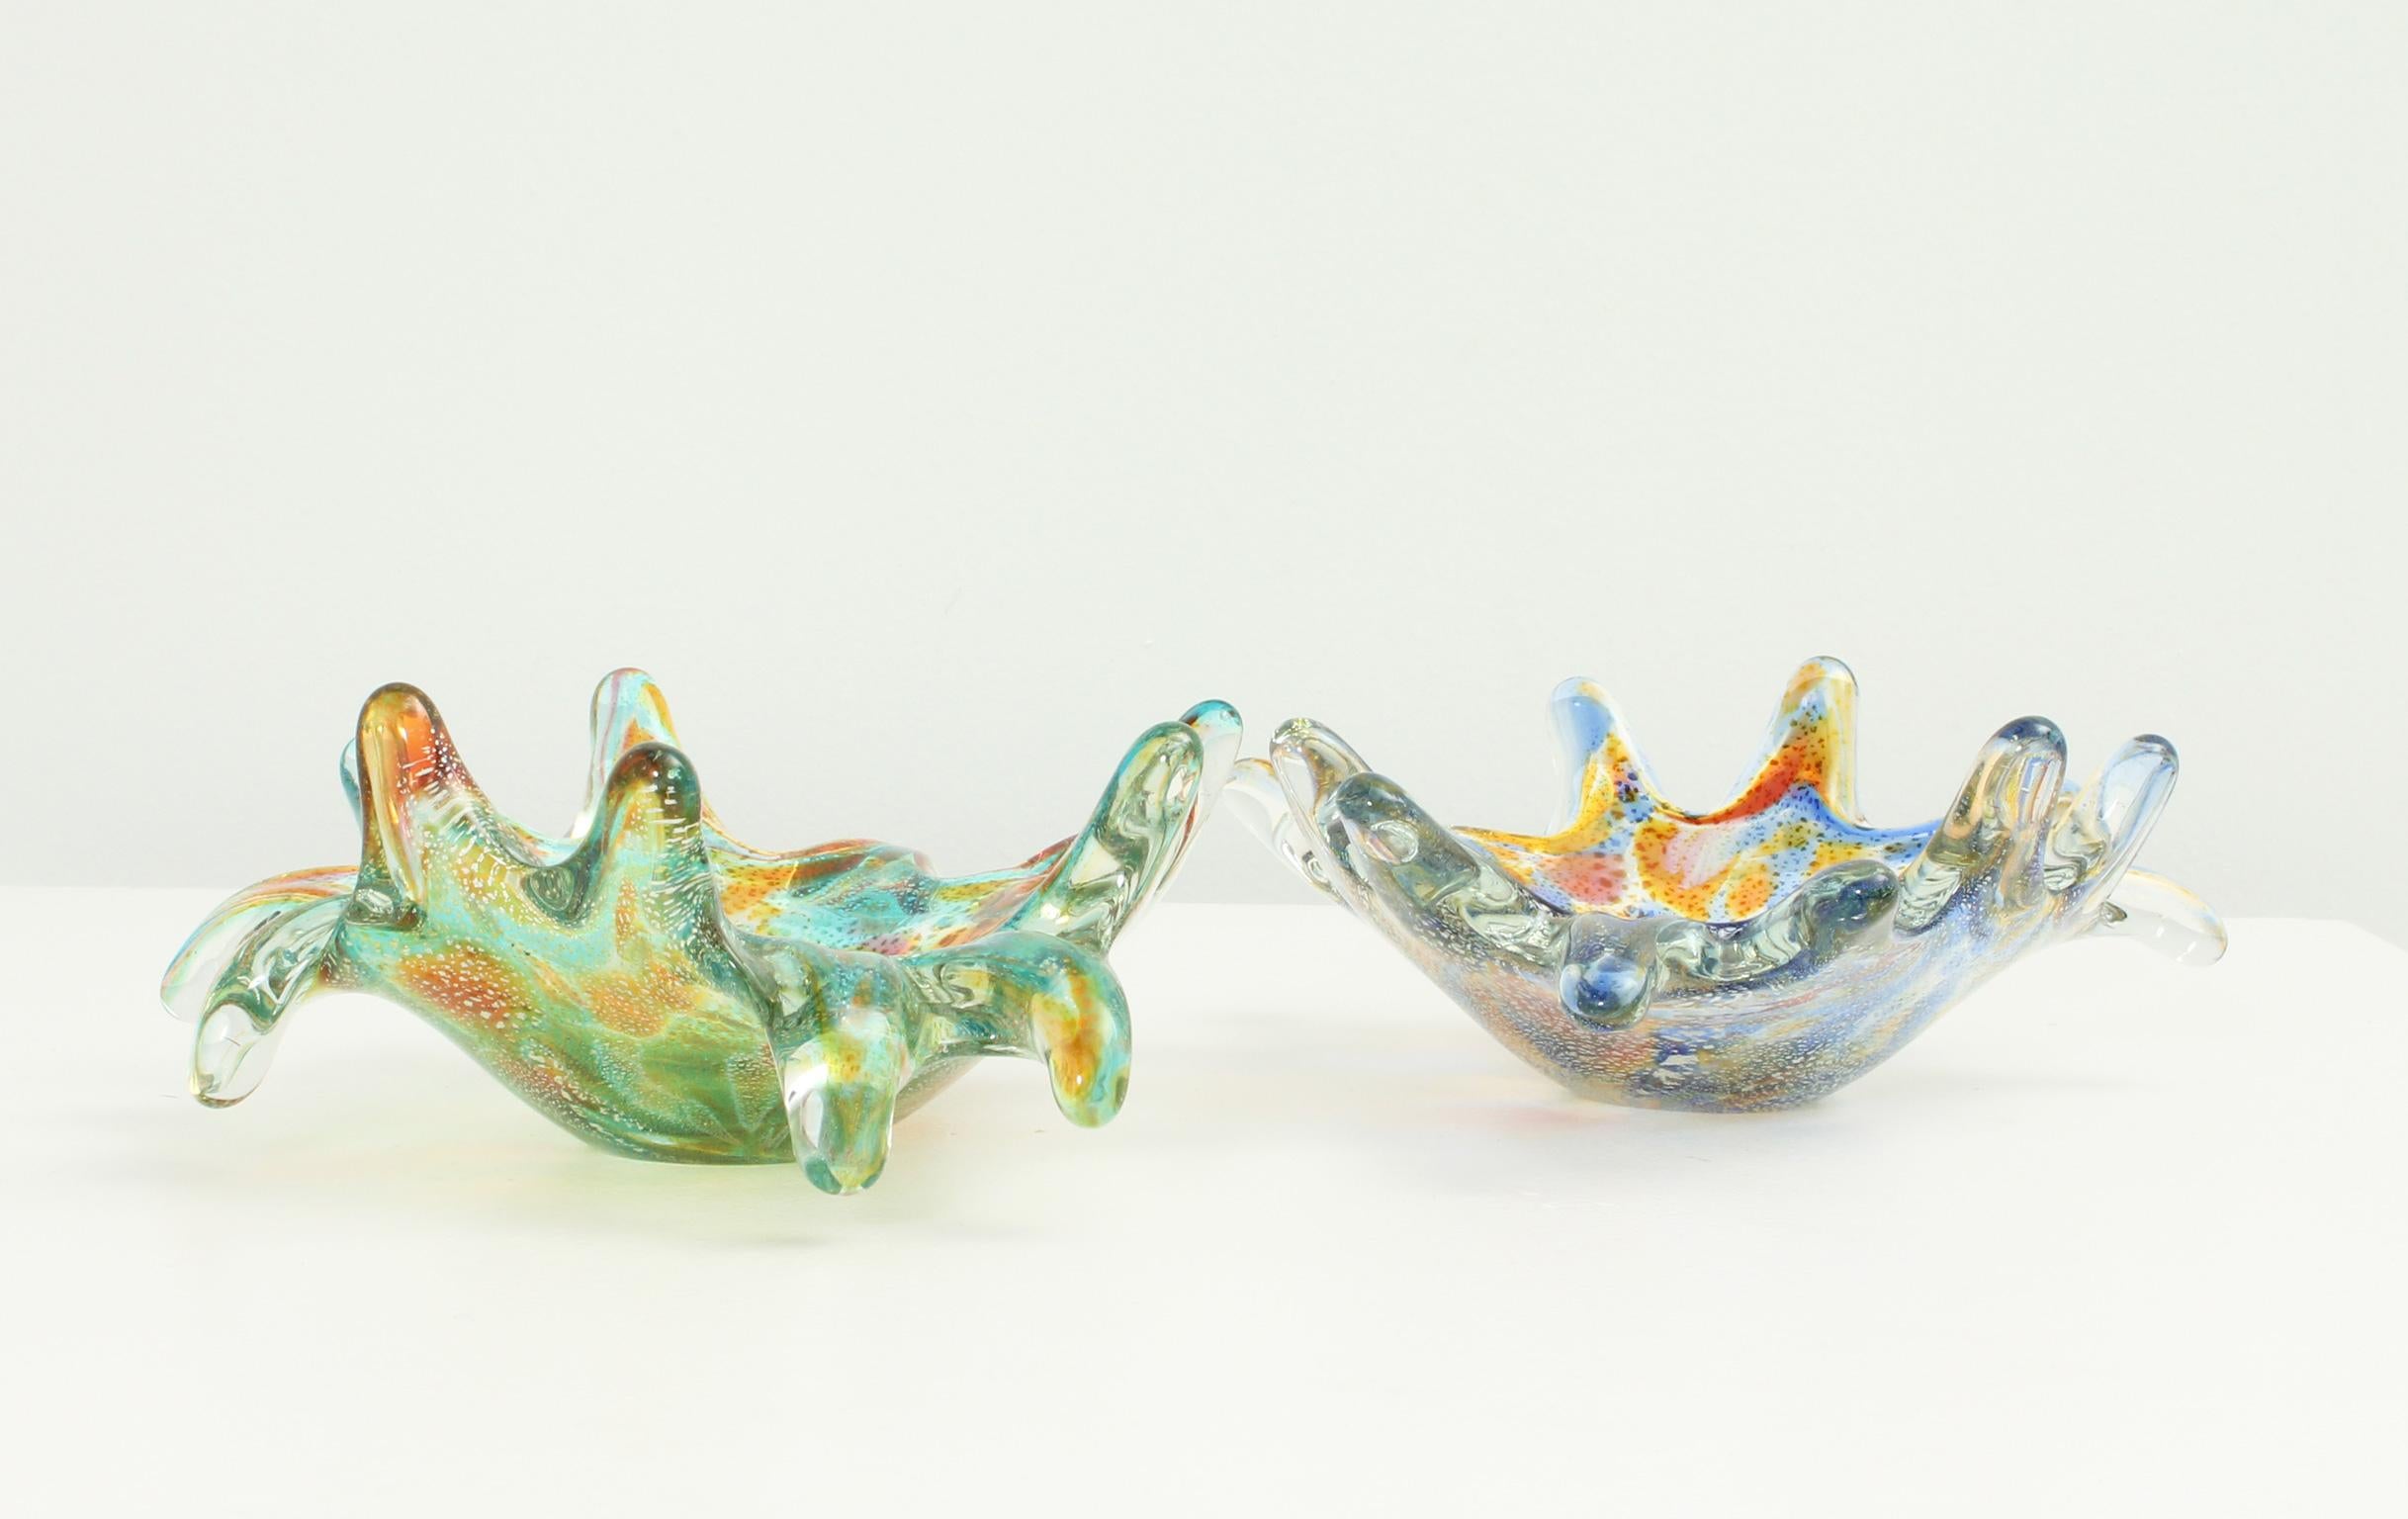 Murano Glass Multicolored Freeform Murano Ashtrays or Bowls, 1960's For Sale